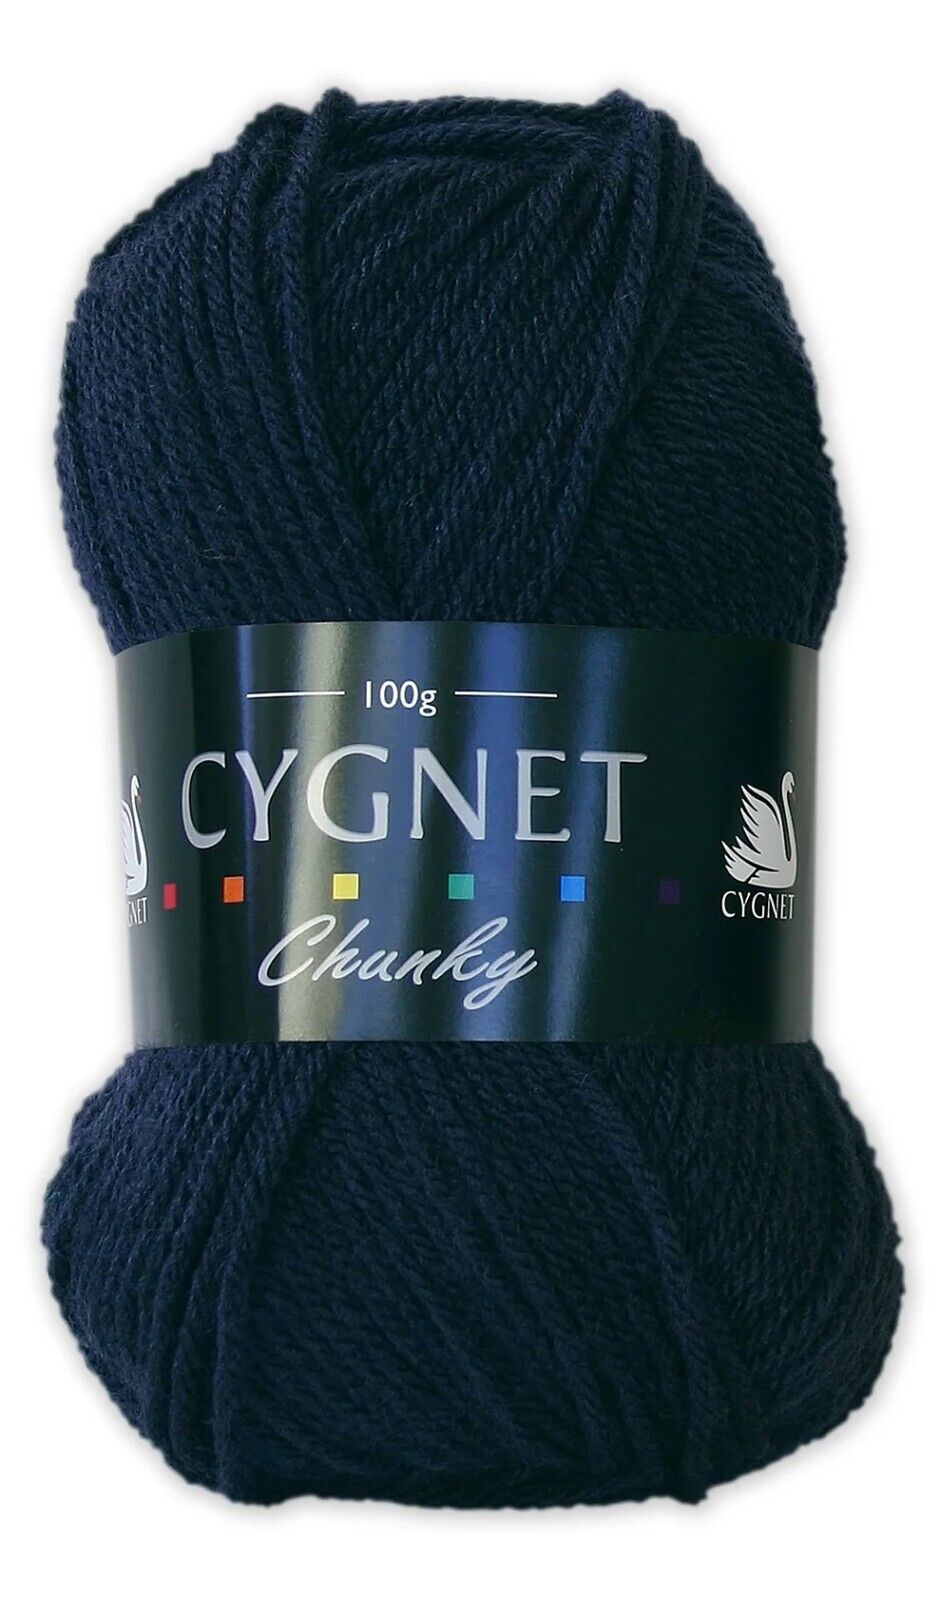 Cygnet CHUNKY Knitting Yarn / Wool - 100g Chunky Knit Ball - Navy